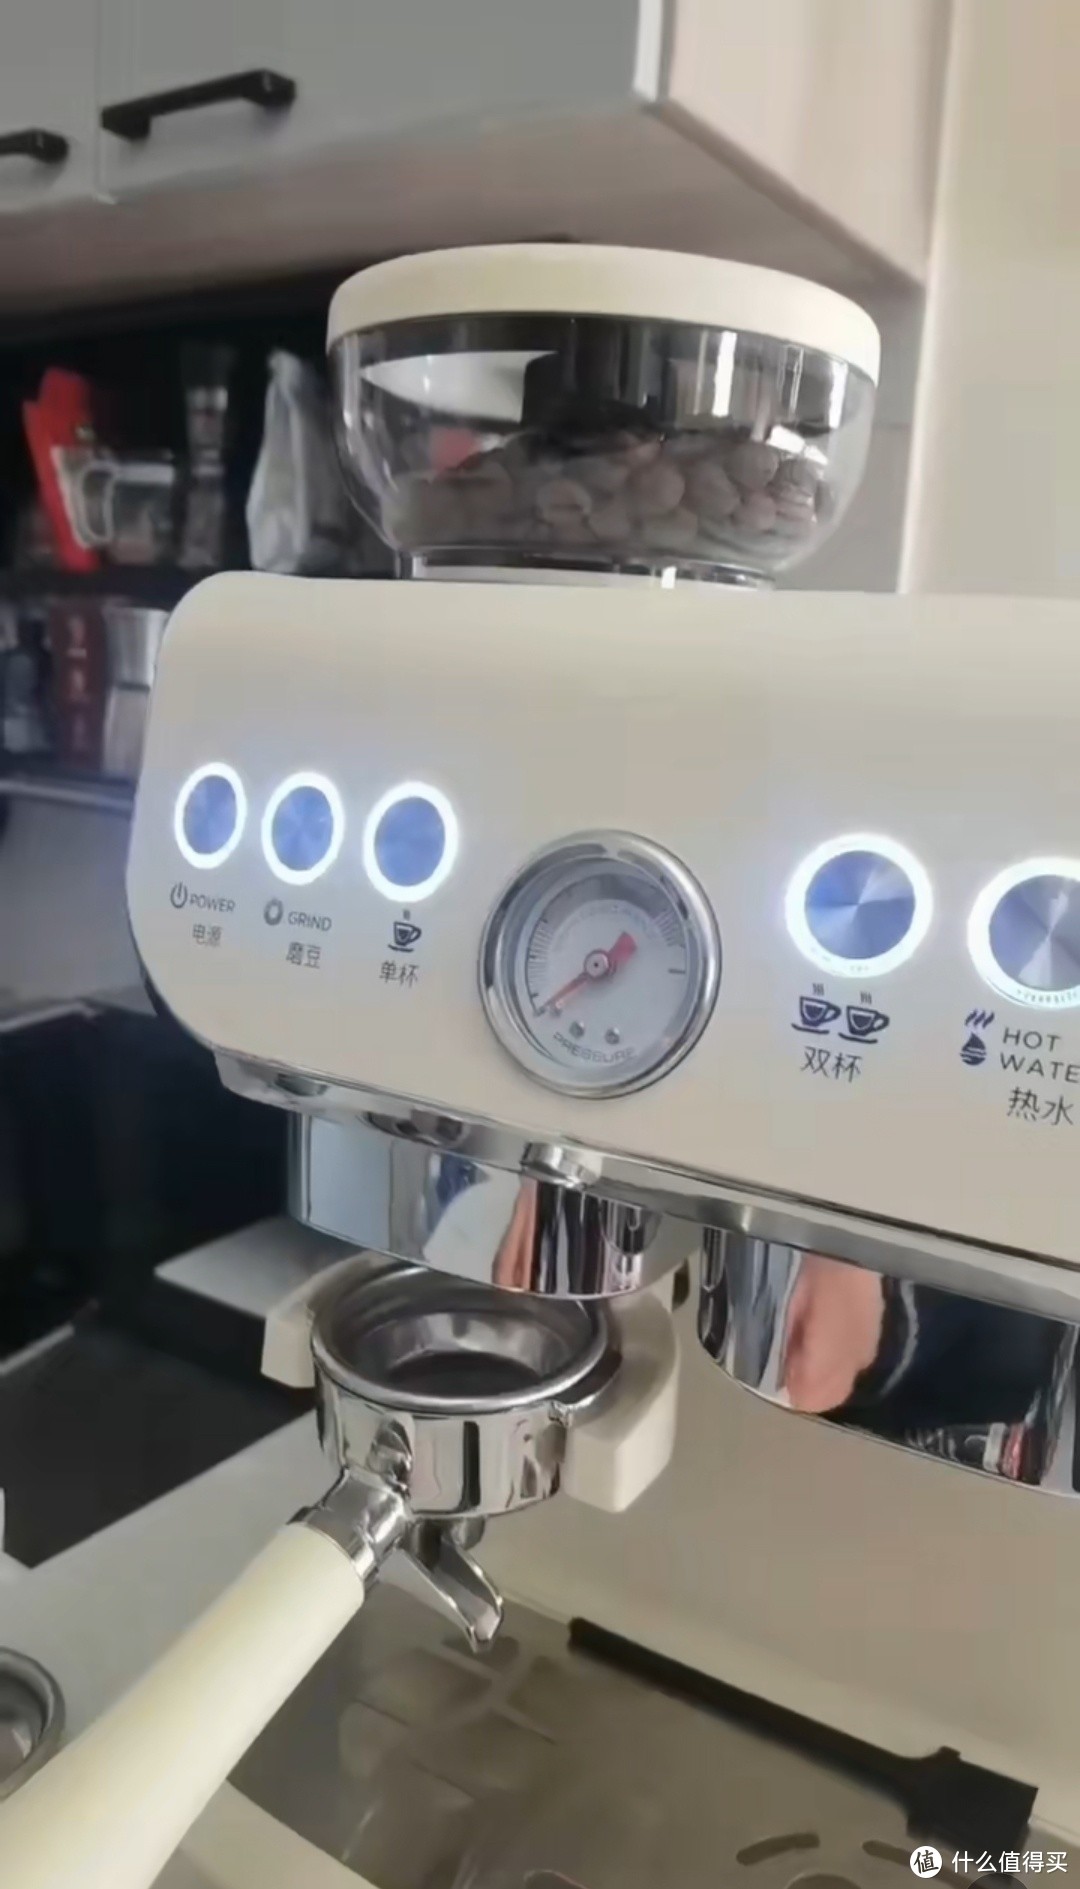 雪特朗咖啡机品质生活不二选择。